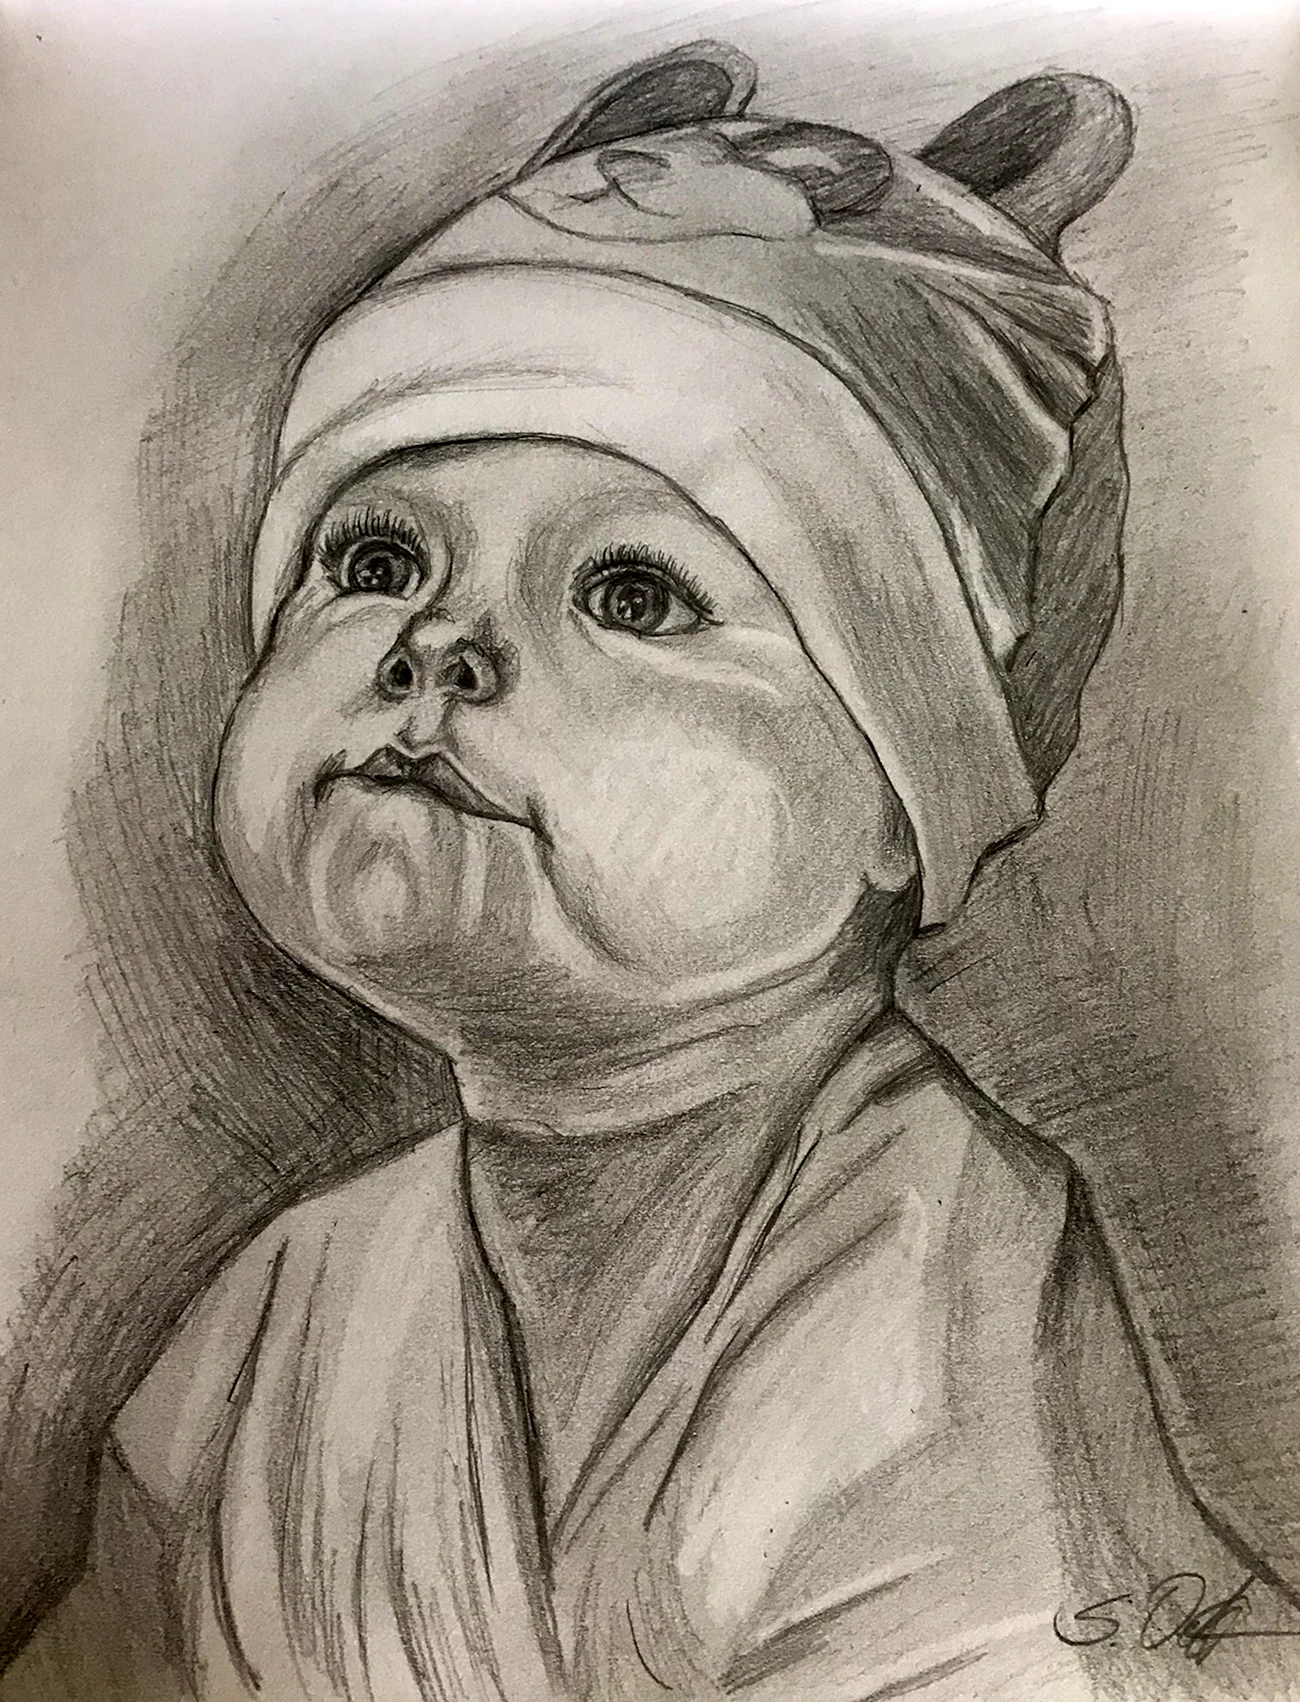 Младенец рисунок карандашом. Для срисовки